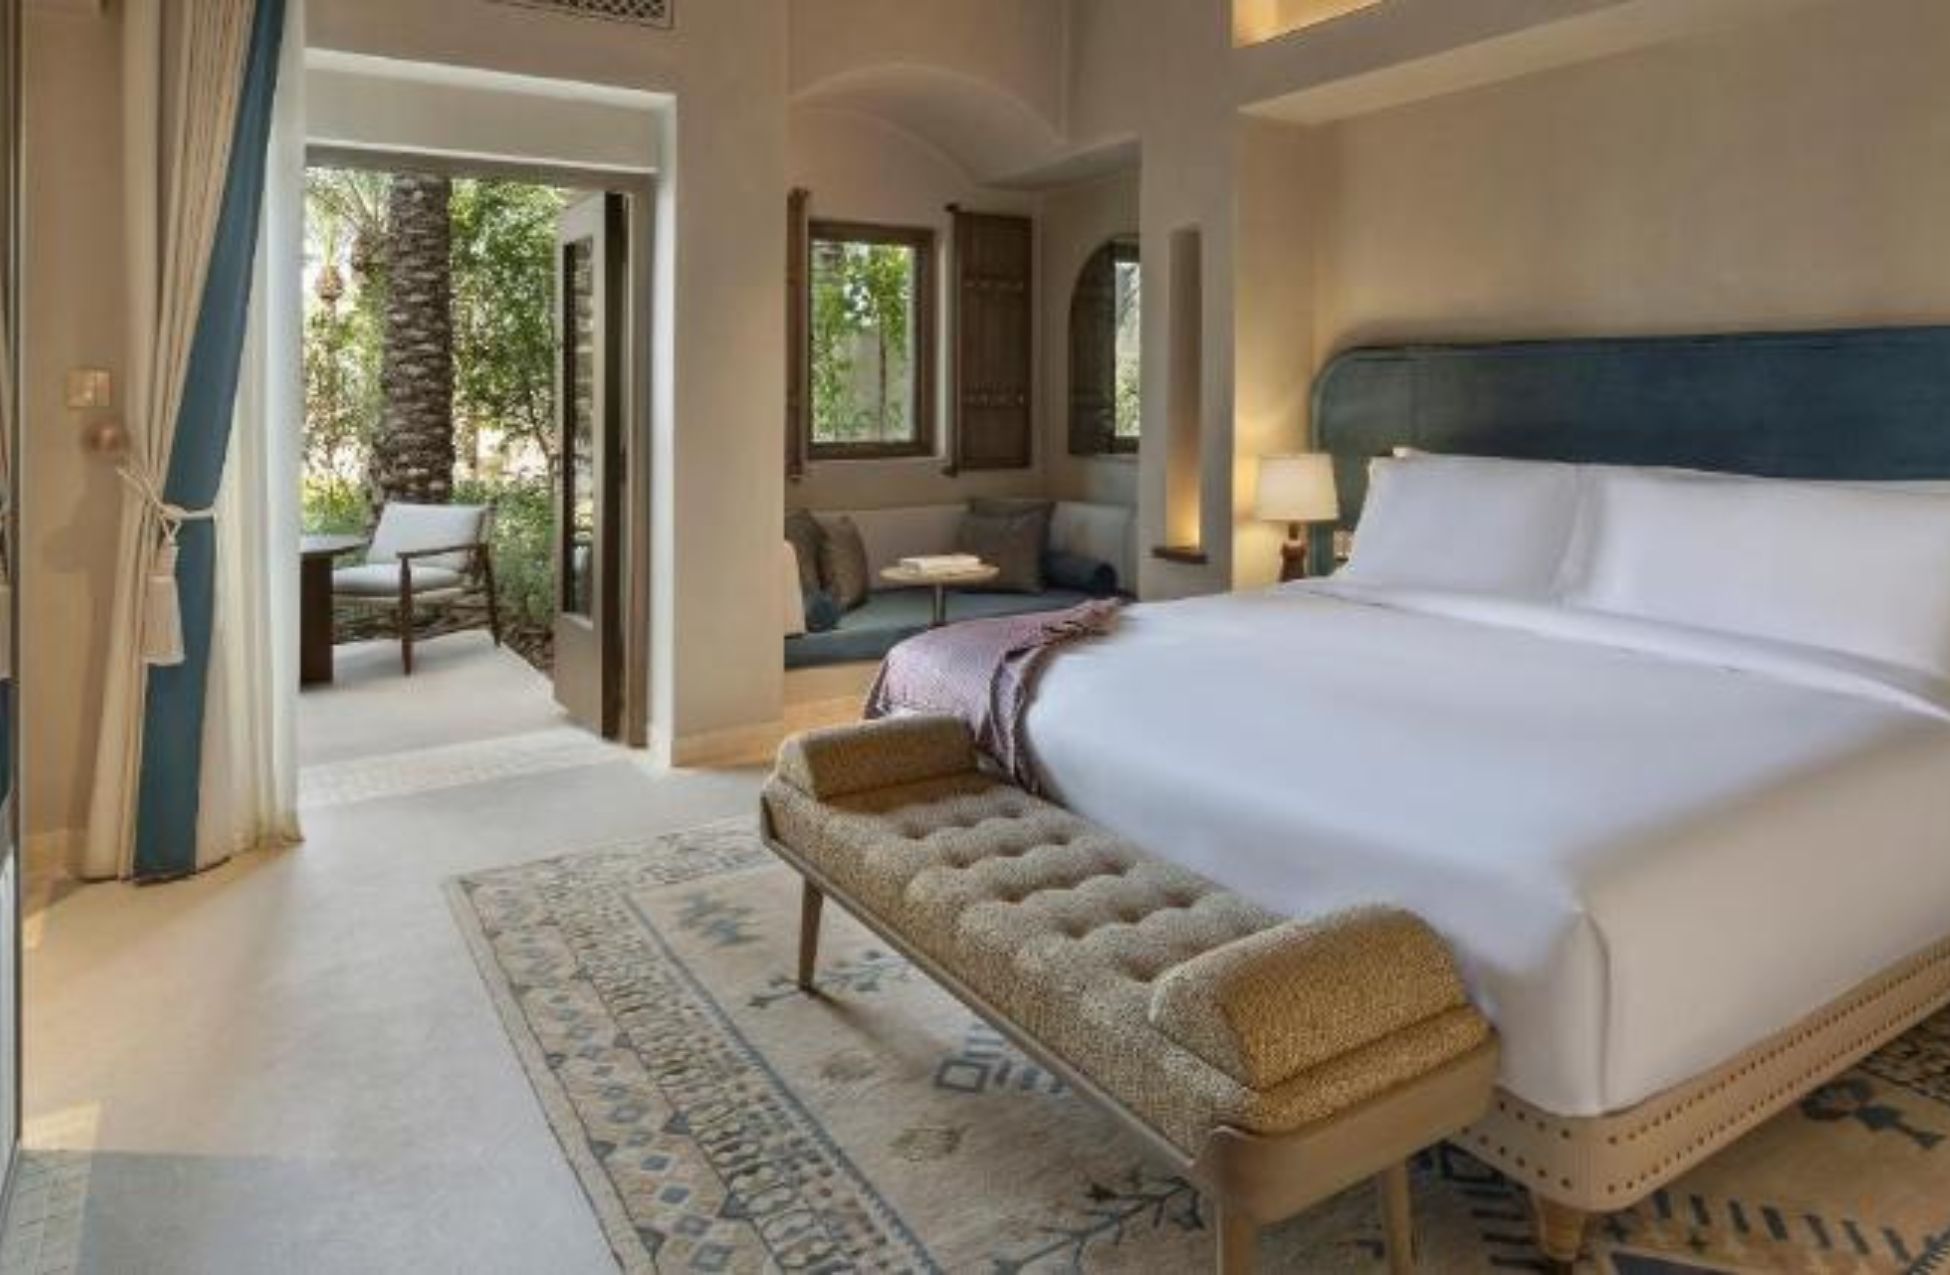 Bab Al Shams Desert Resort - Best Hotels In Dubai